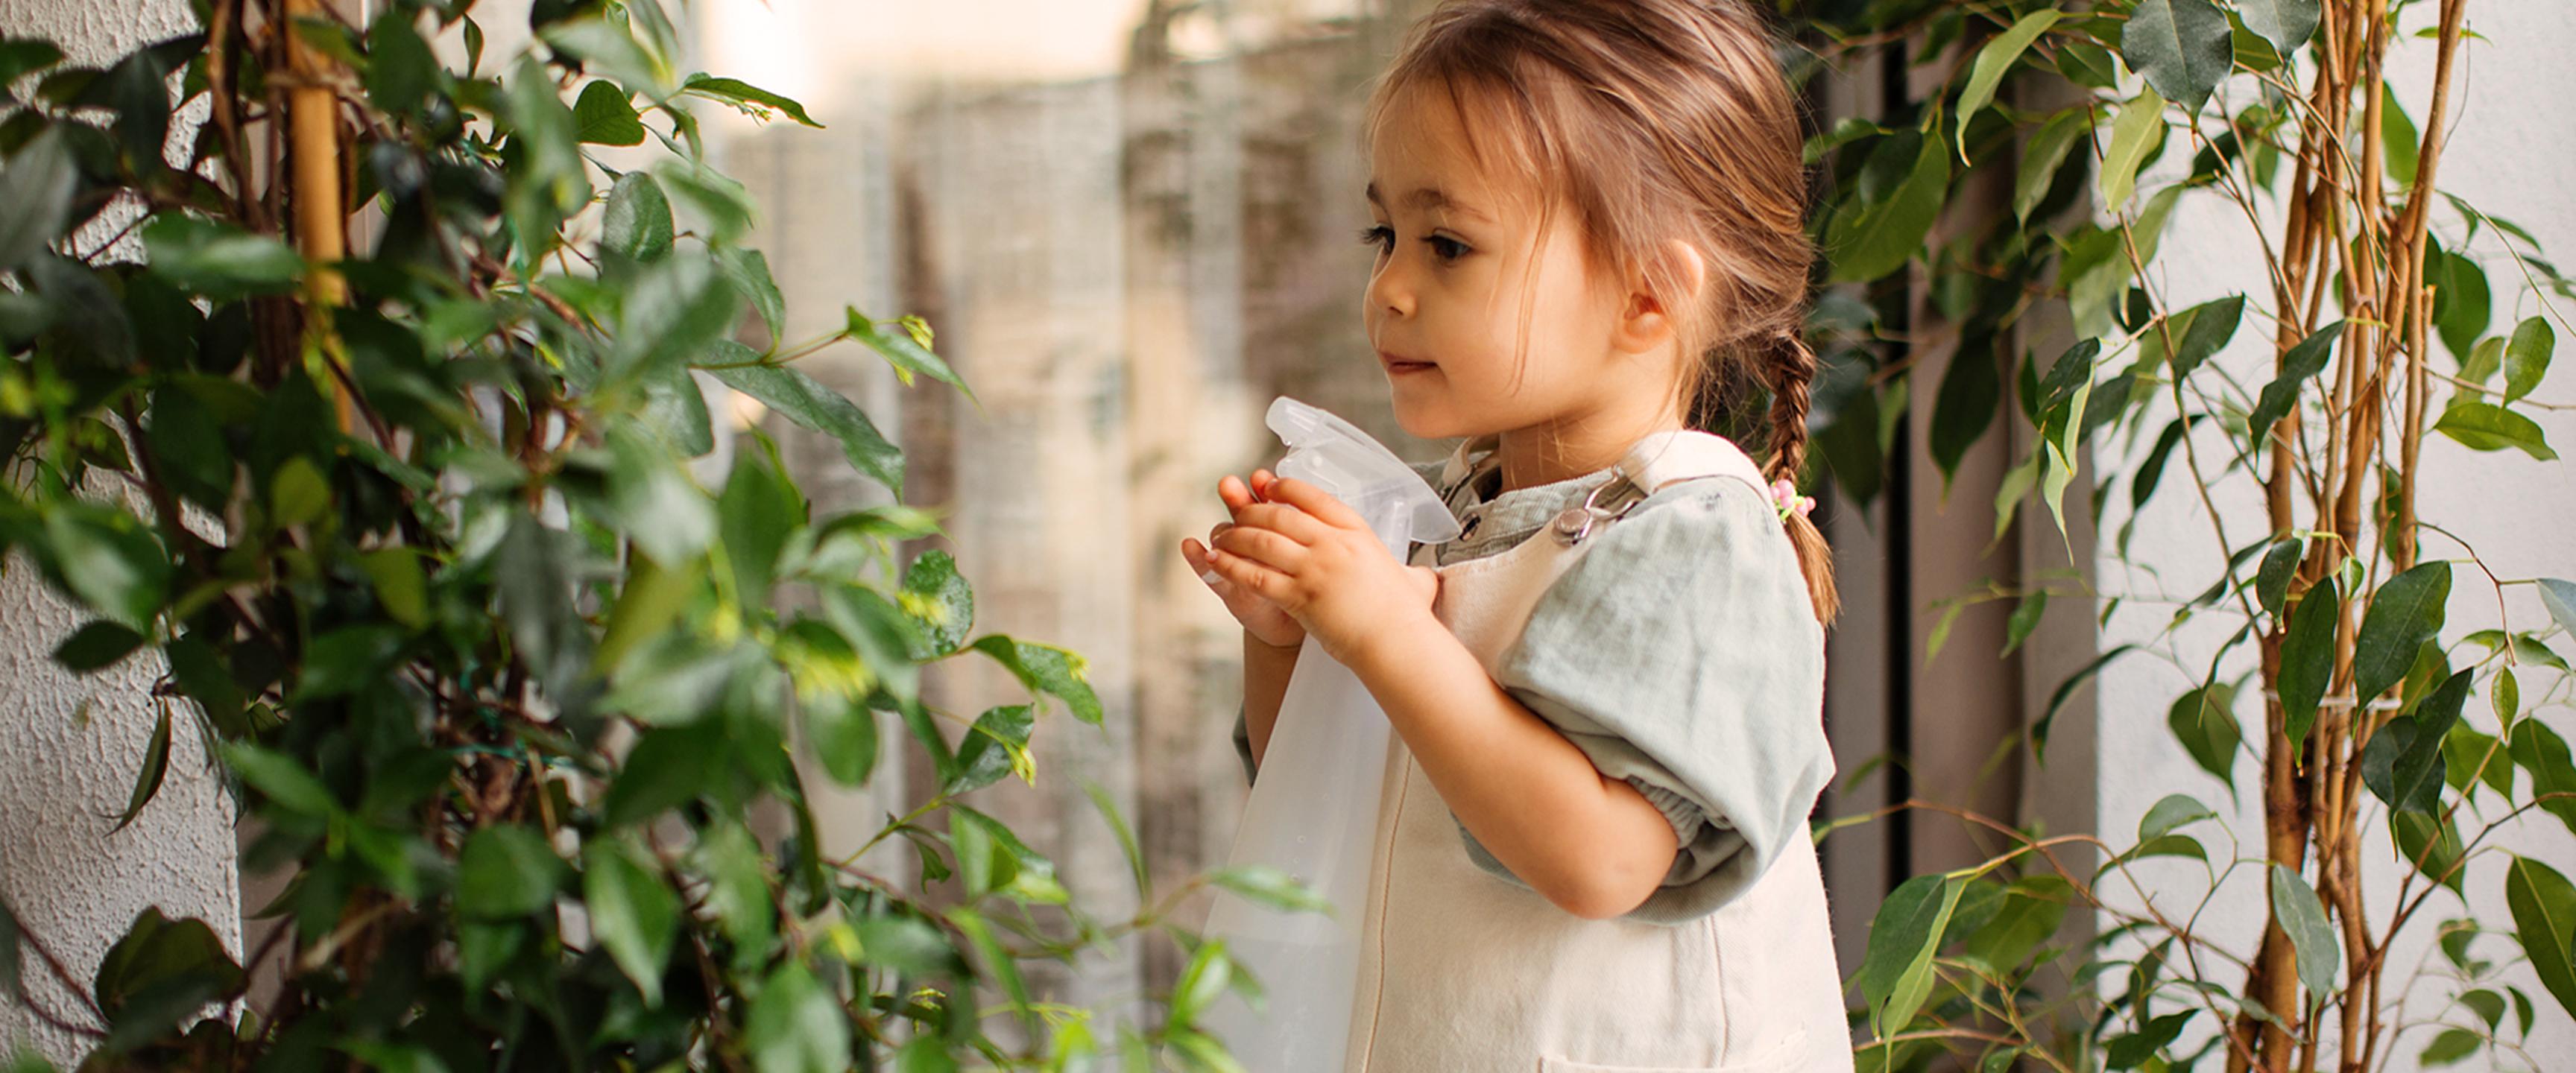 Маленькая девочка поливает растения из пульверизатора.